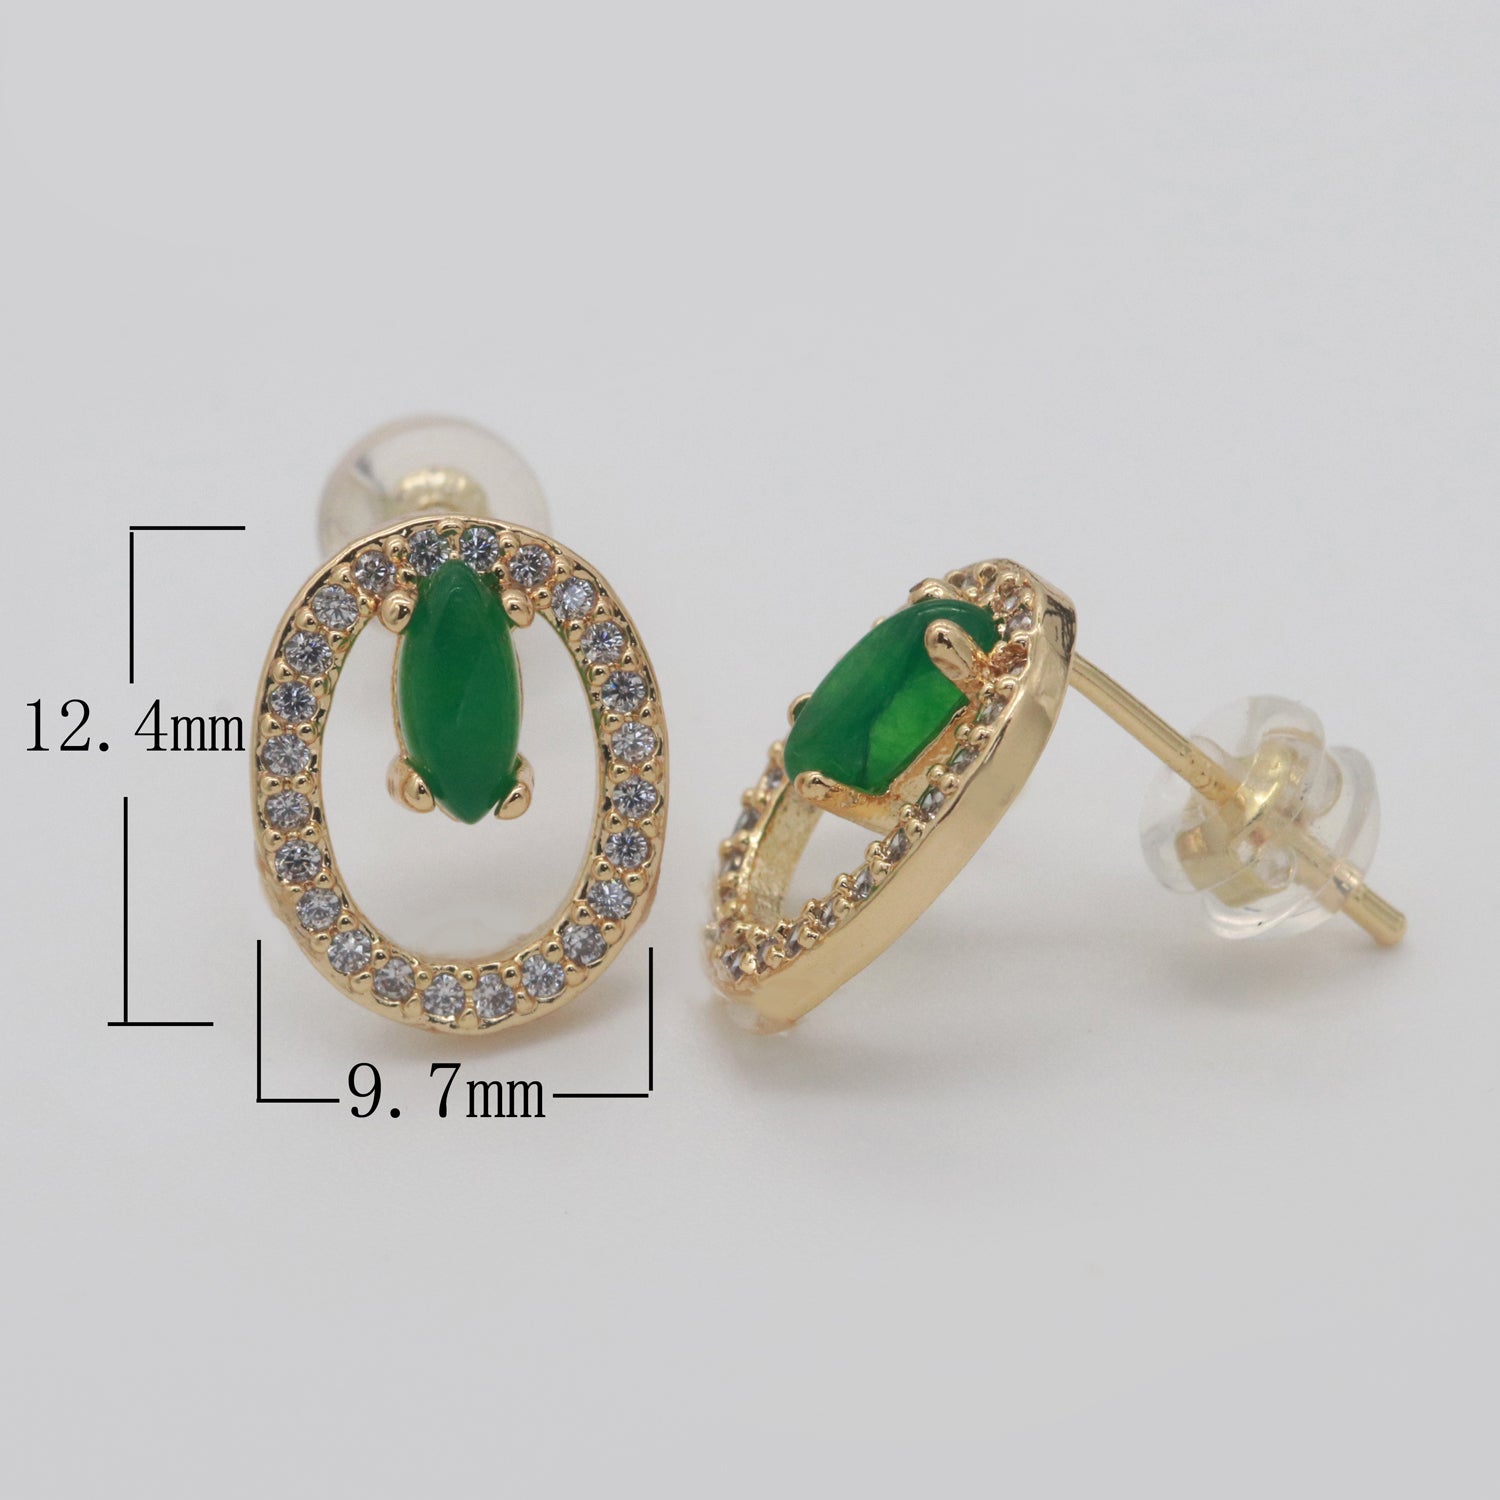 Gold Filled Studs / Dainty Green Earrings / Green Gem Earrings / Emerald Earrings / Green Stone Earrings / CZ Stud Earring /Dainty Studs - DLUXCA